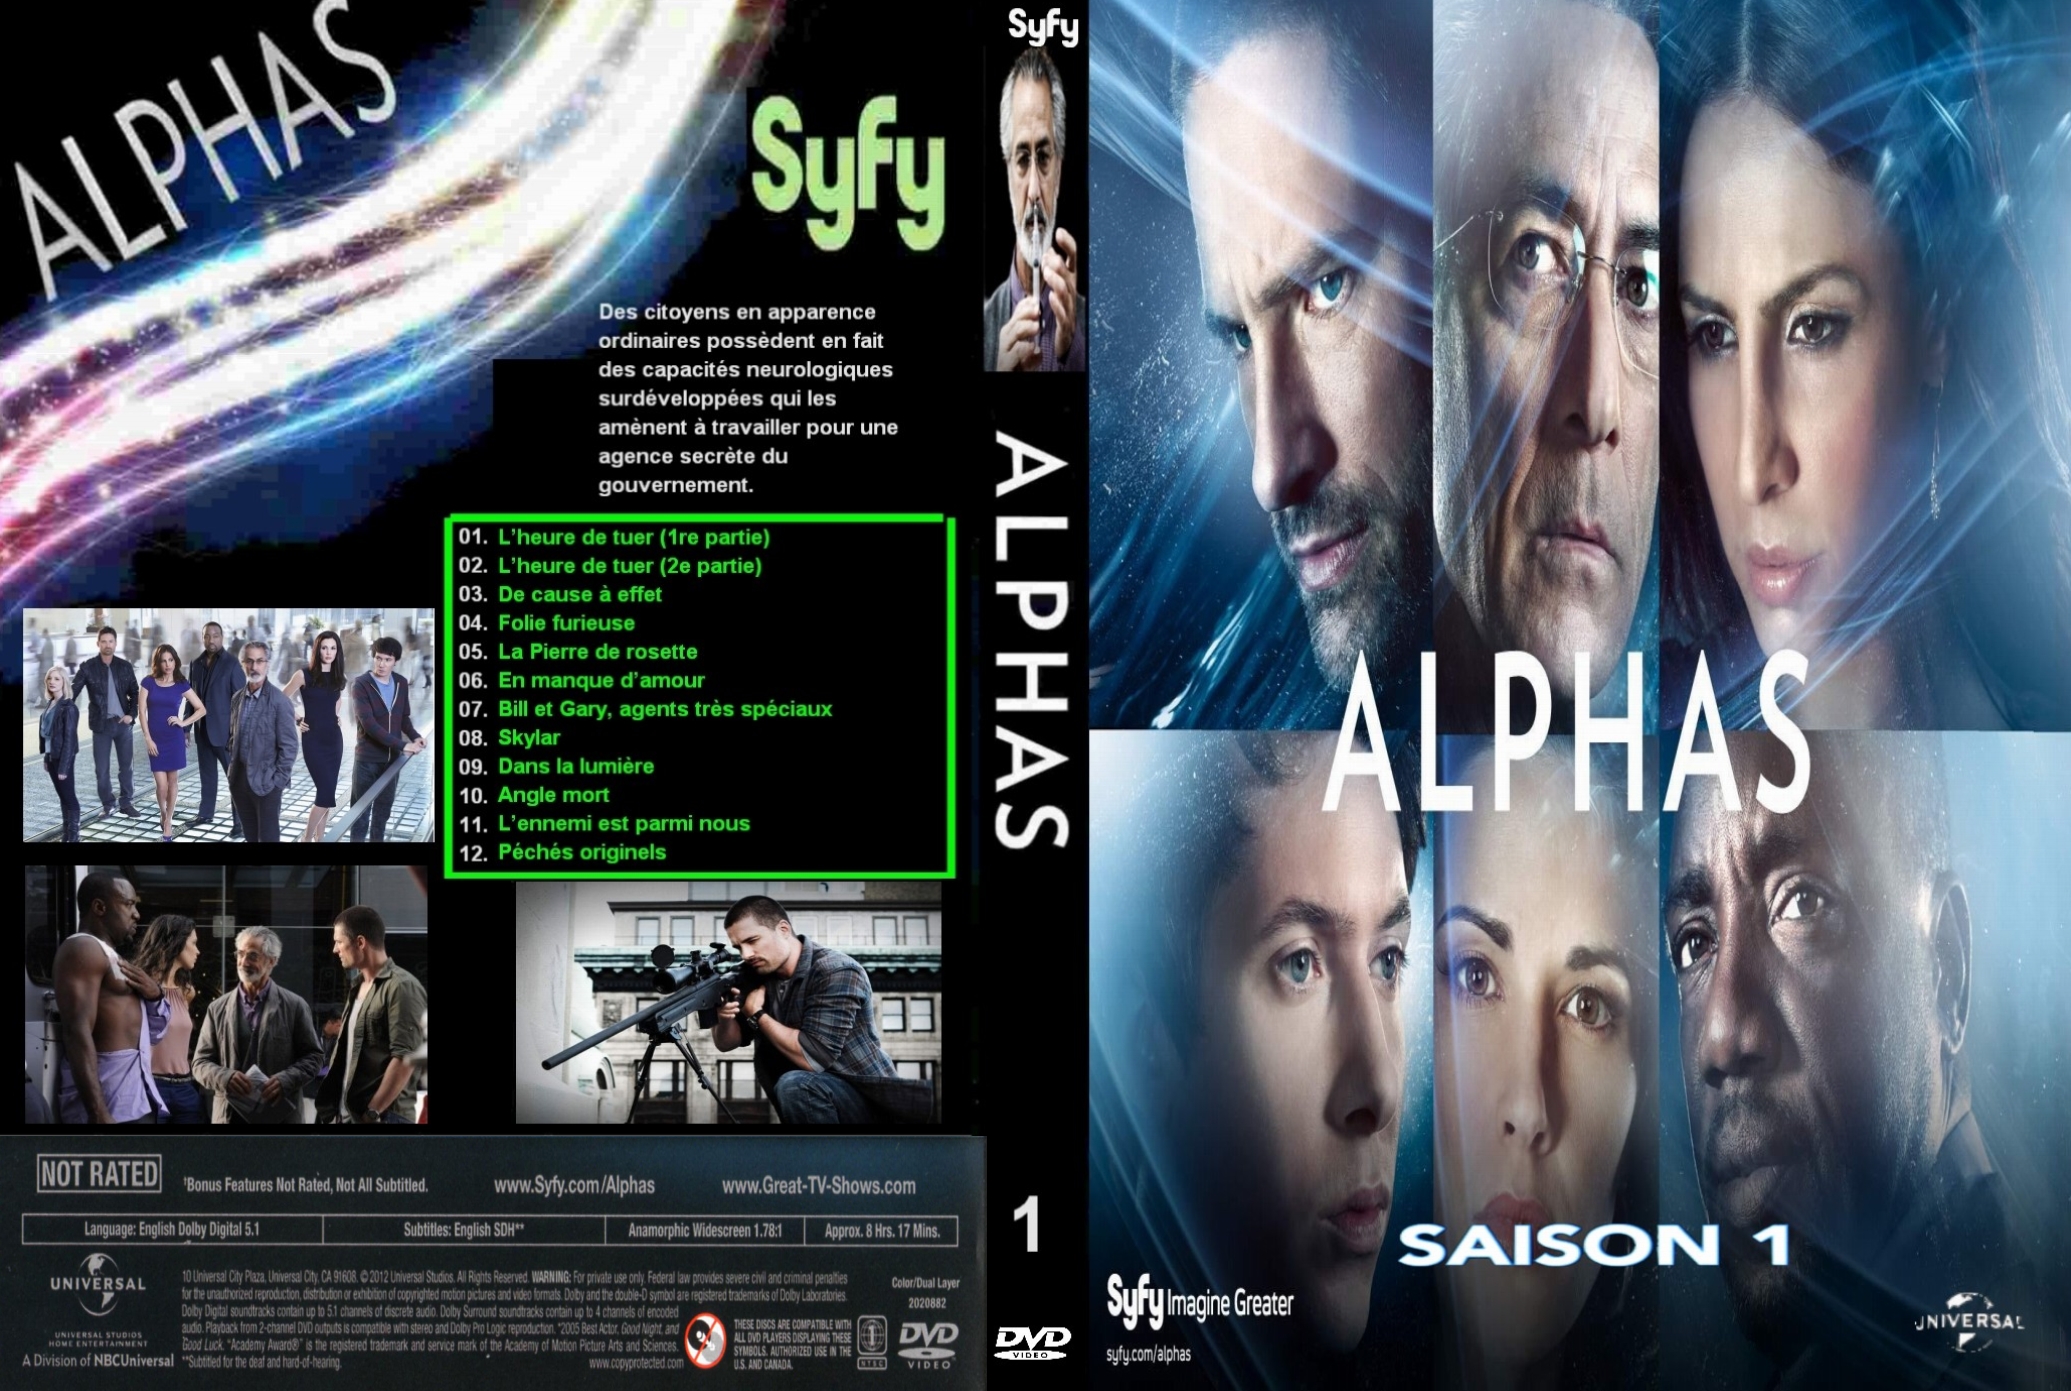 Jaquette DVD Alphas Saison 1 custom